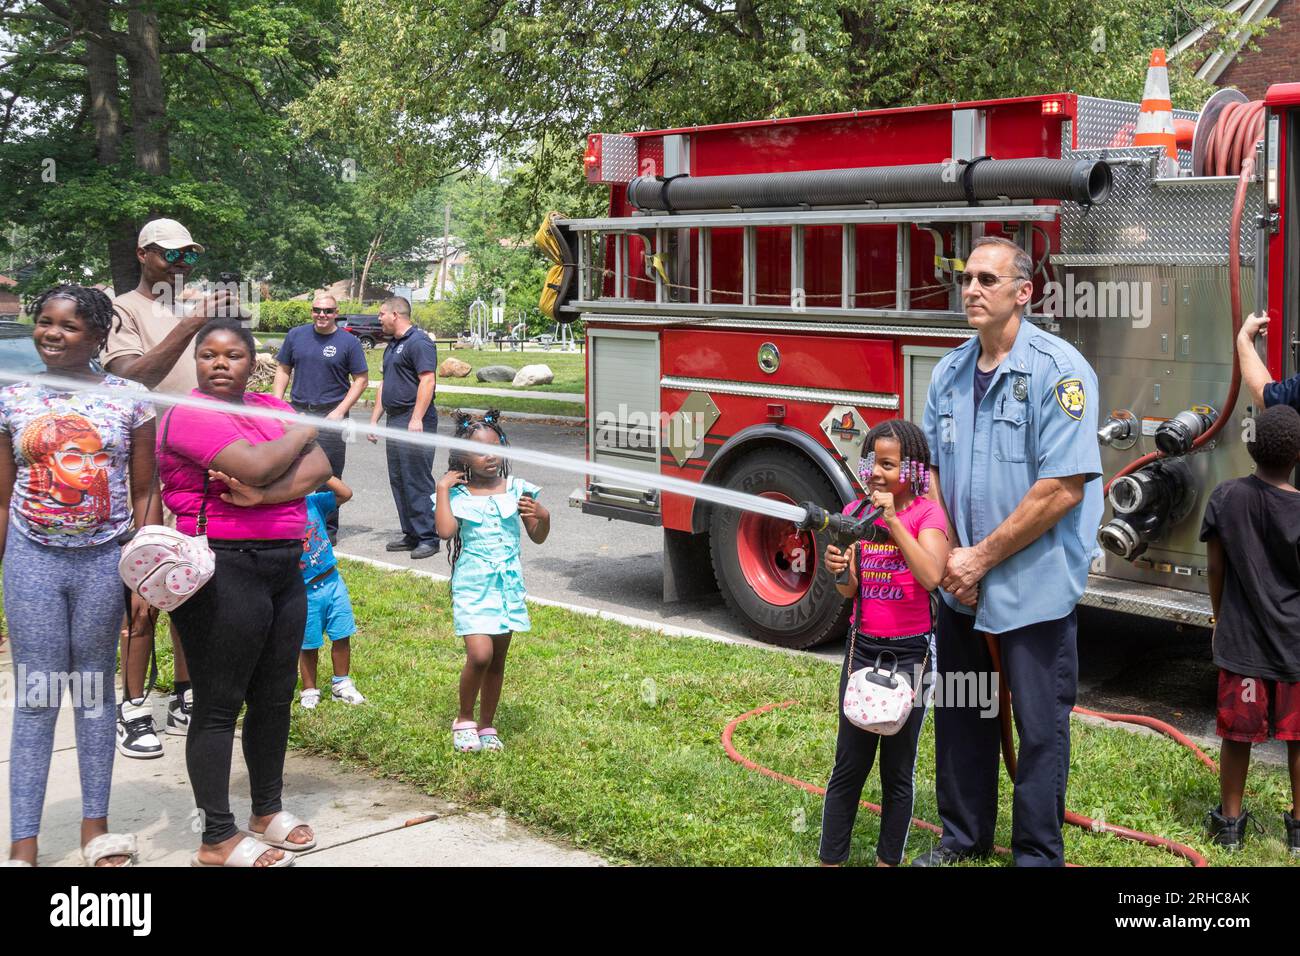 Detroit, Michigan - il dipartimento dei vigili del fuoco di Detroit consente ai bambini di maneggiare una manichetta antincendio mentre i residenti del quartiere di Morningside organizzano un picnic/festa Foto Stock